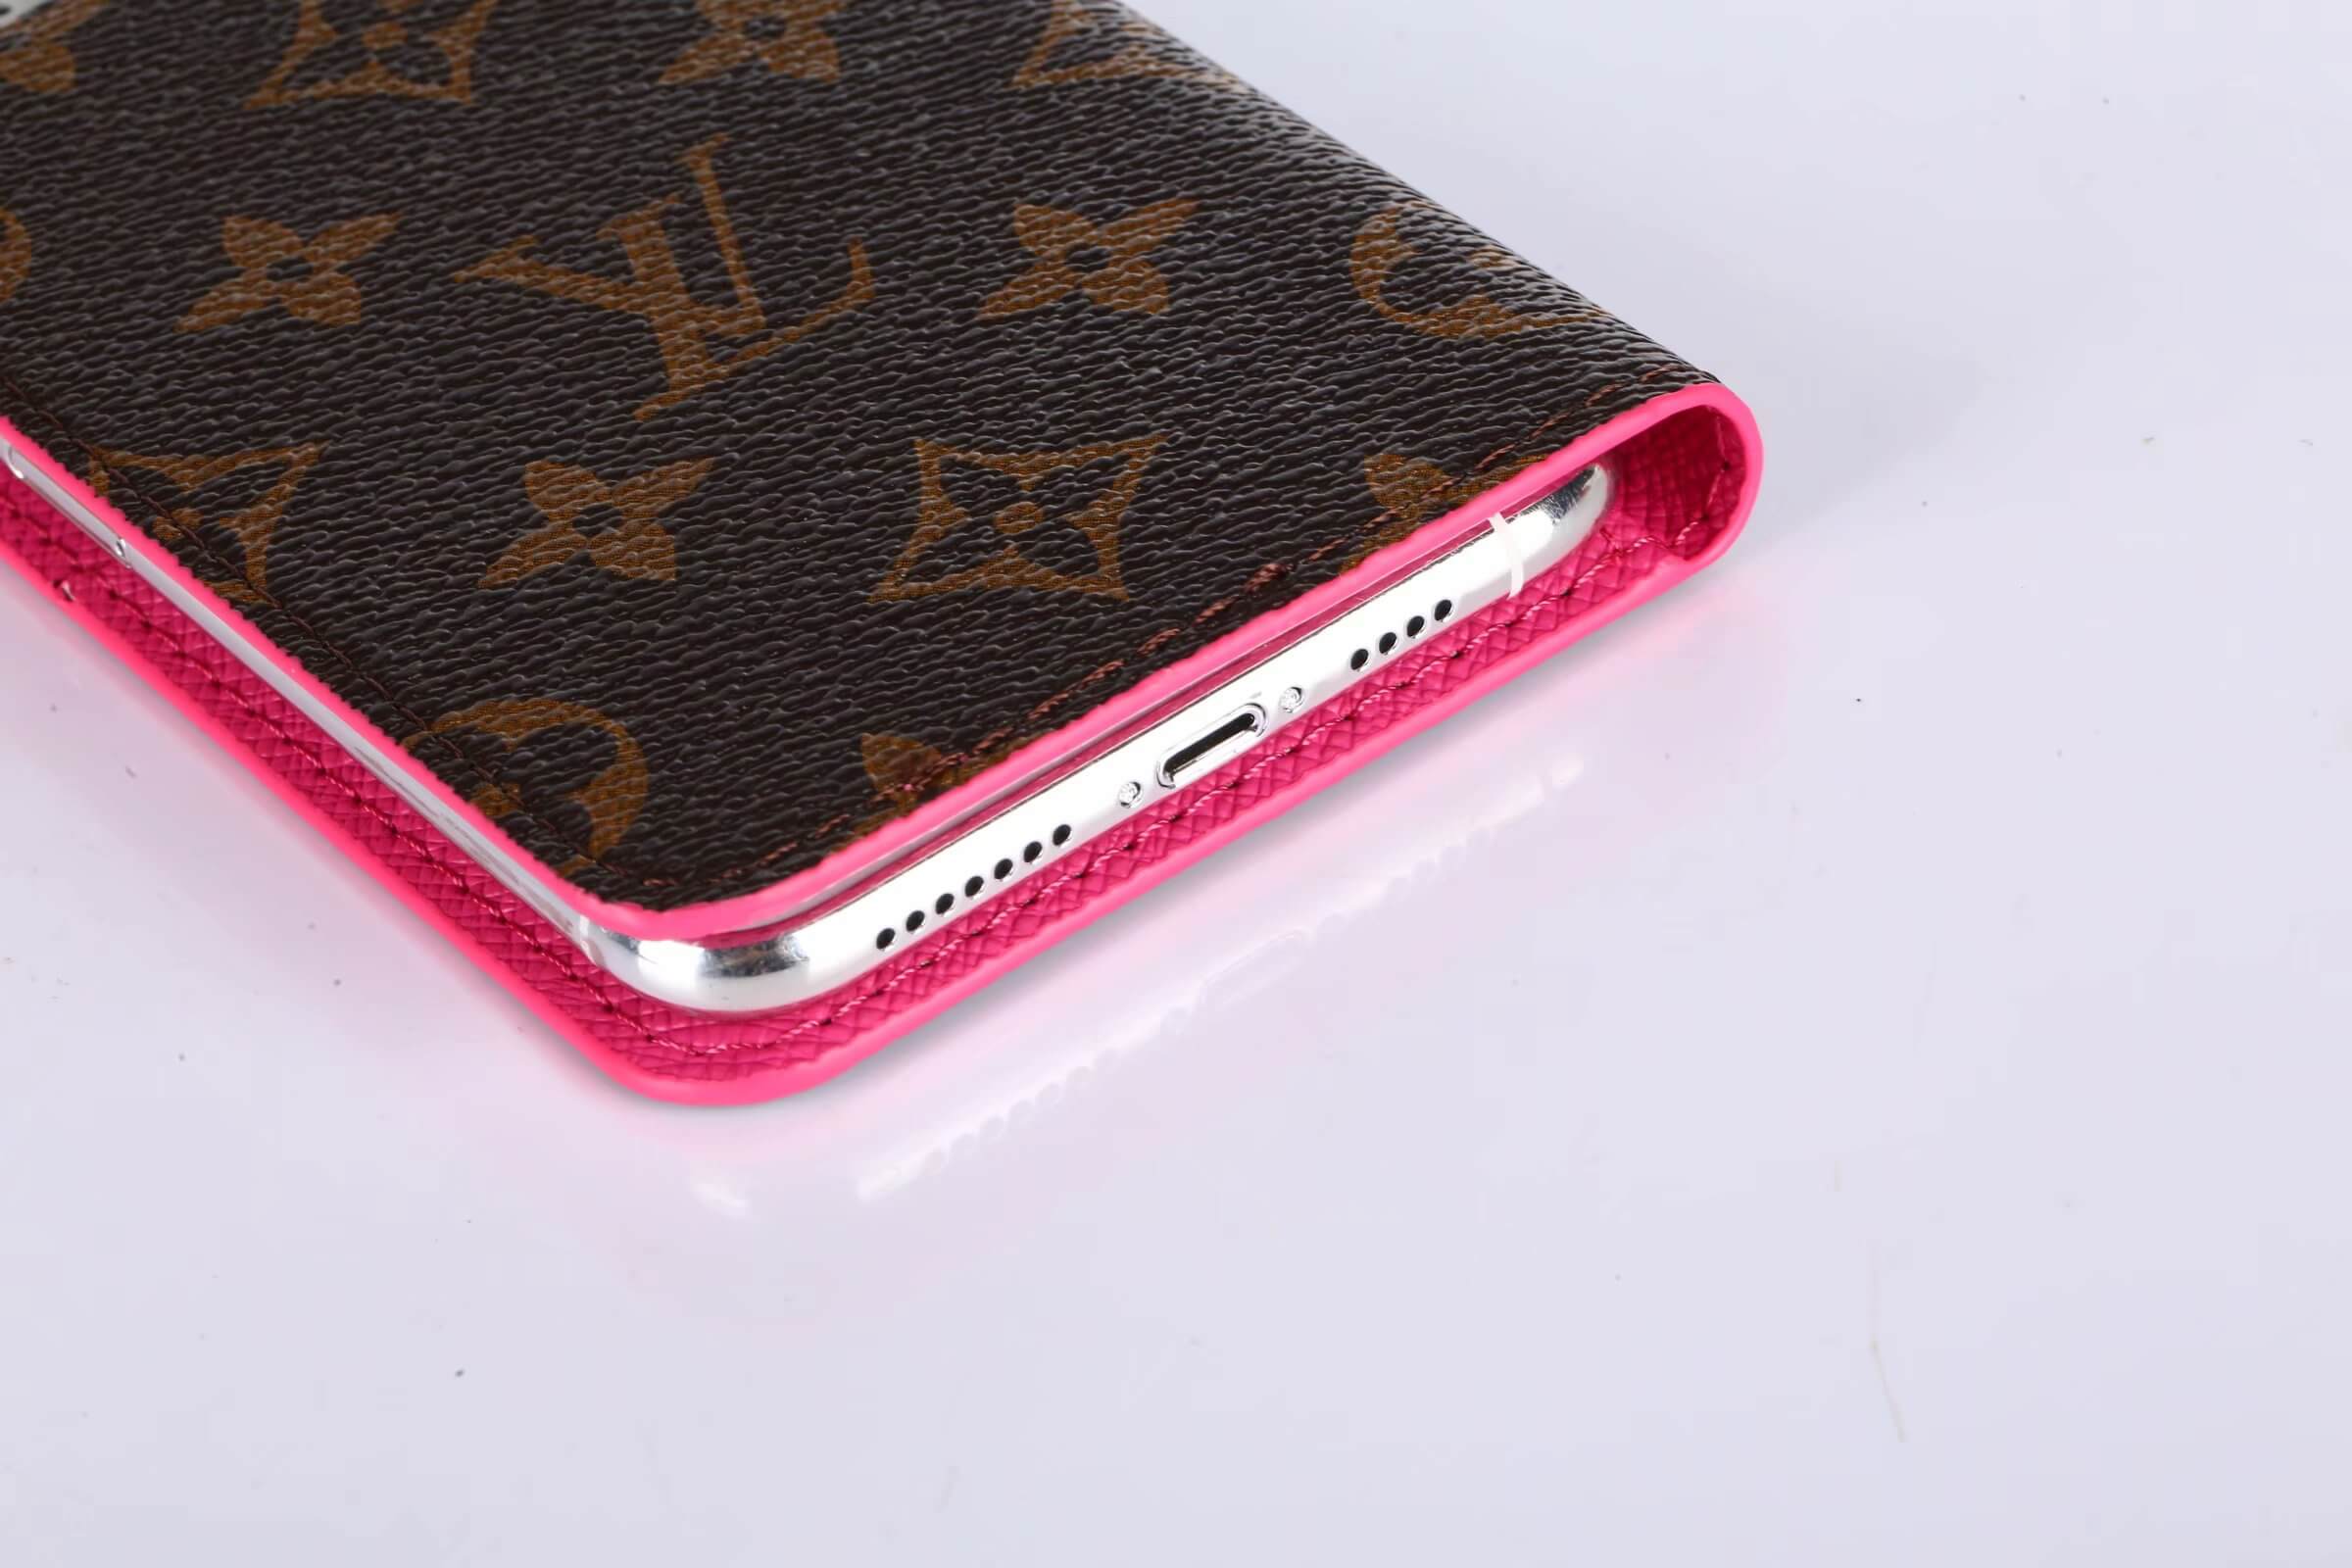 Classic Louis Vuitton iPhone XR Case